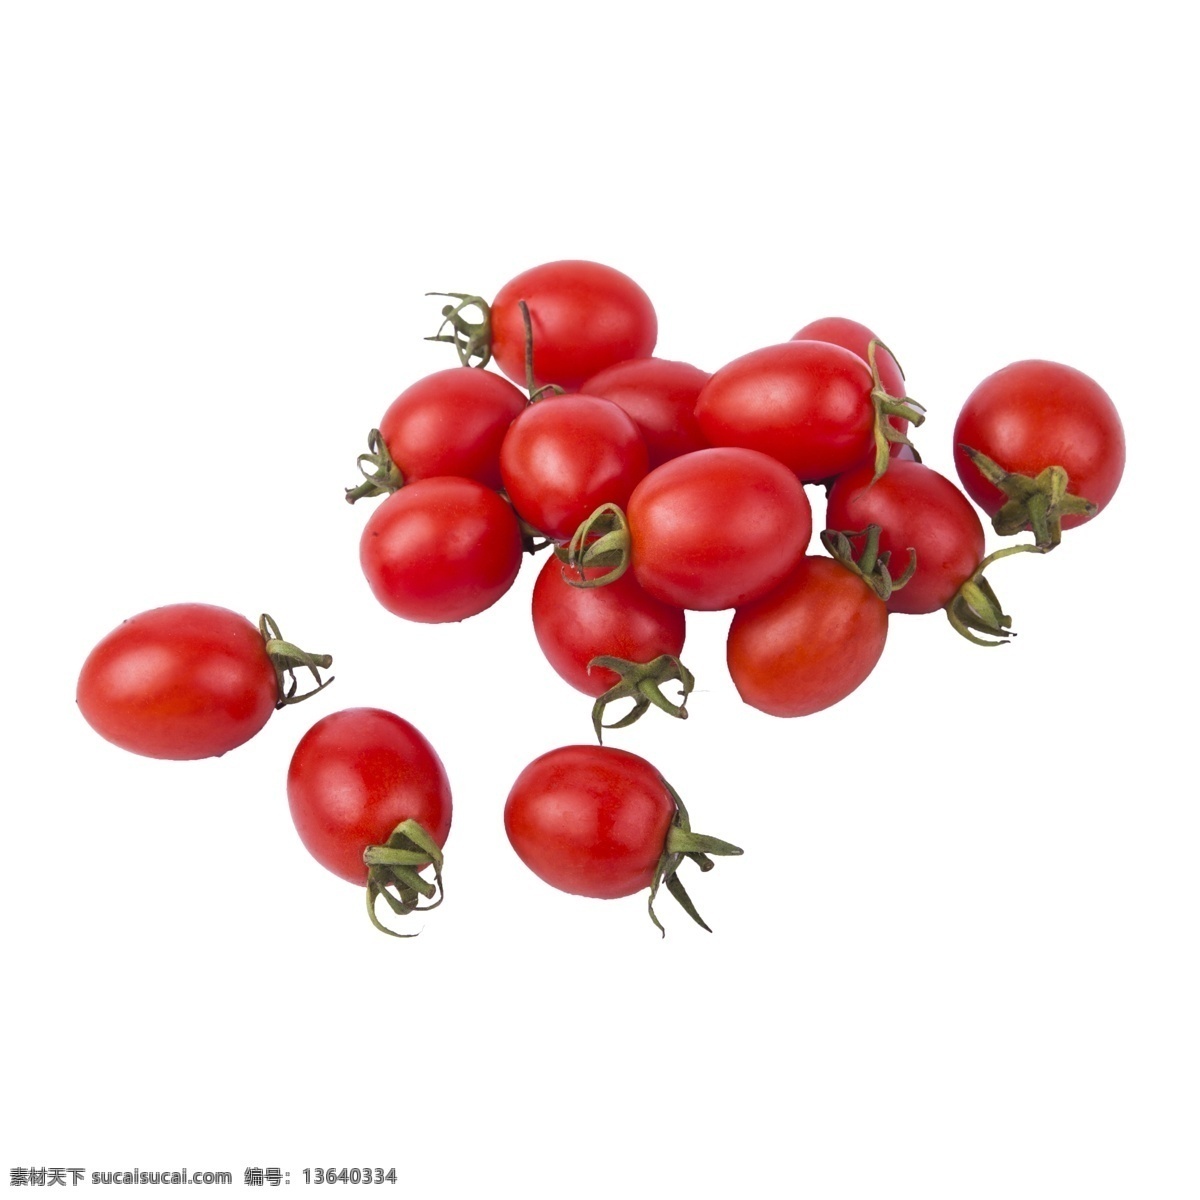 红色小番茄 红色番茄 红色水果 圣女果图片 免抠圣女果 透明图层 水果图层 小番茄 生活百科 餐饮美食